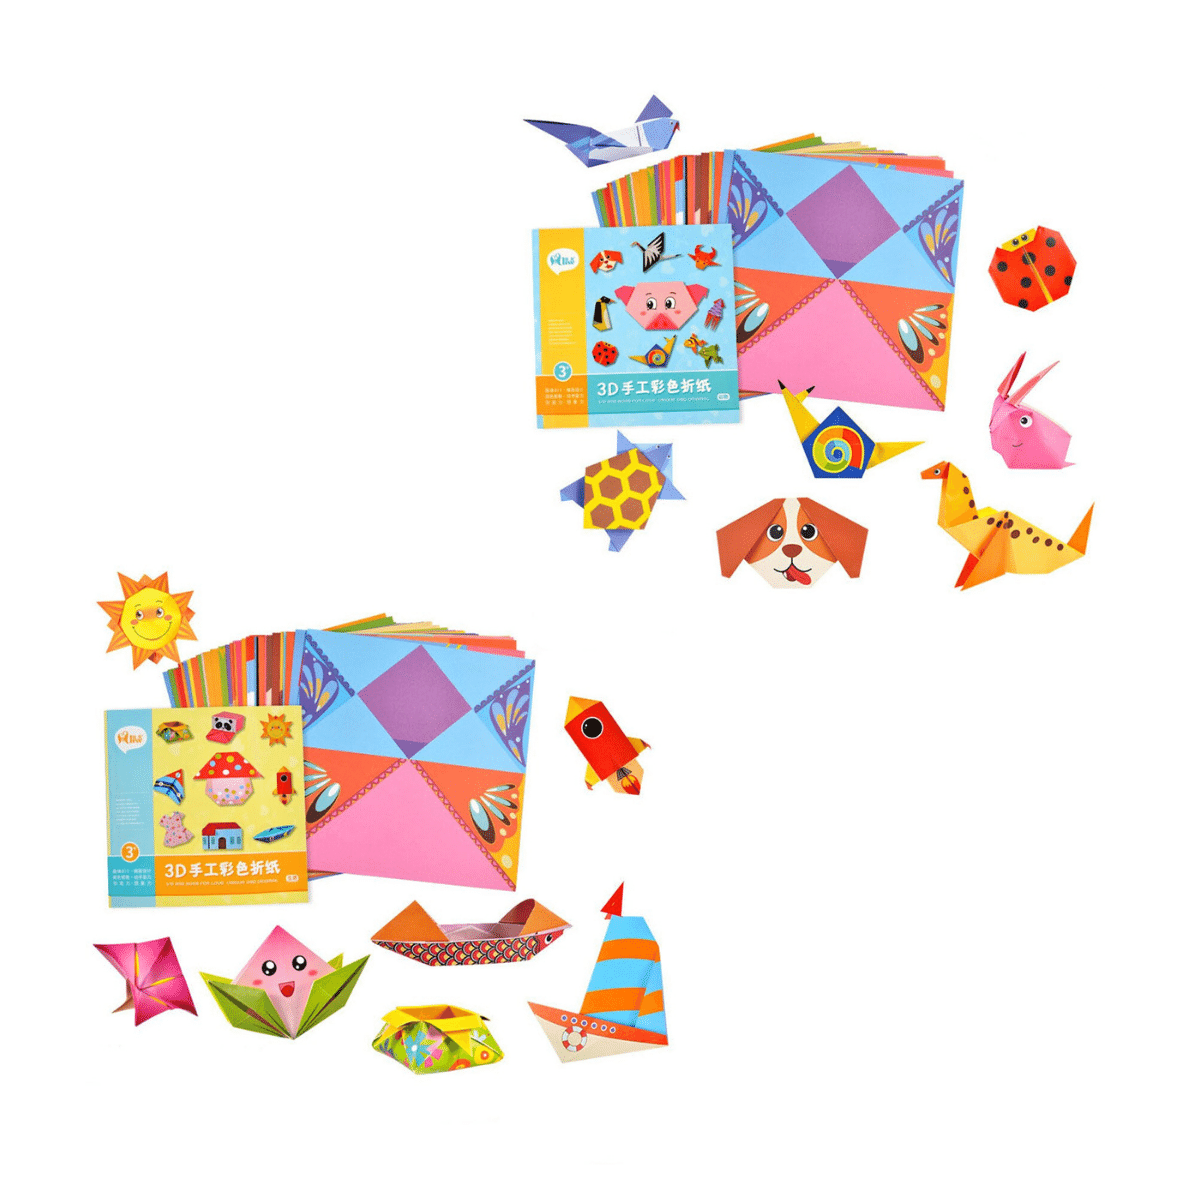 Origami Kit™ | Foldning har aldrig været sjovere - Papirspil